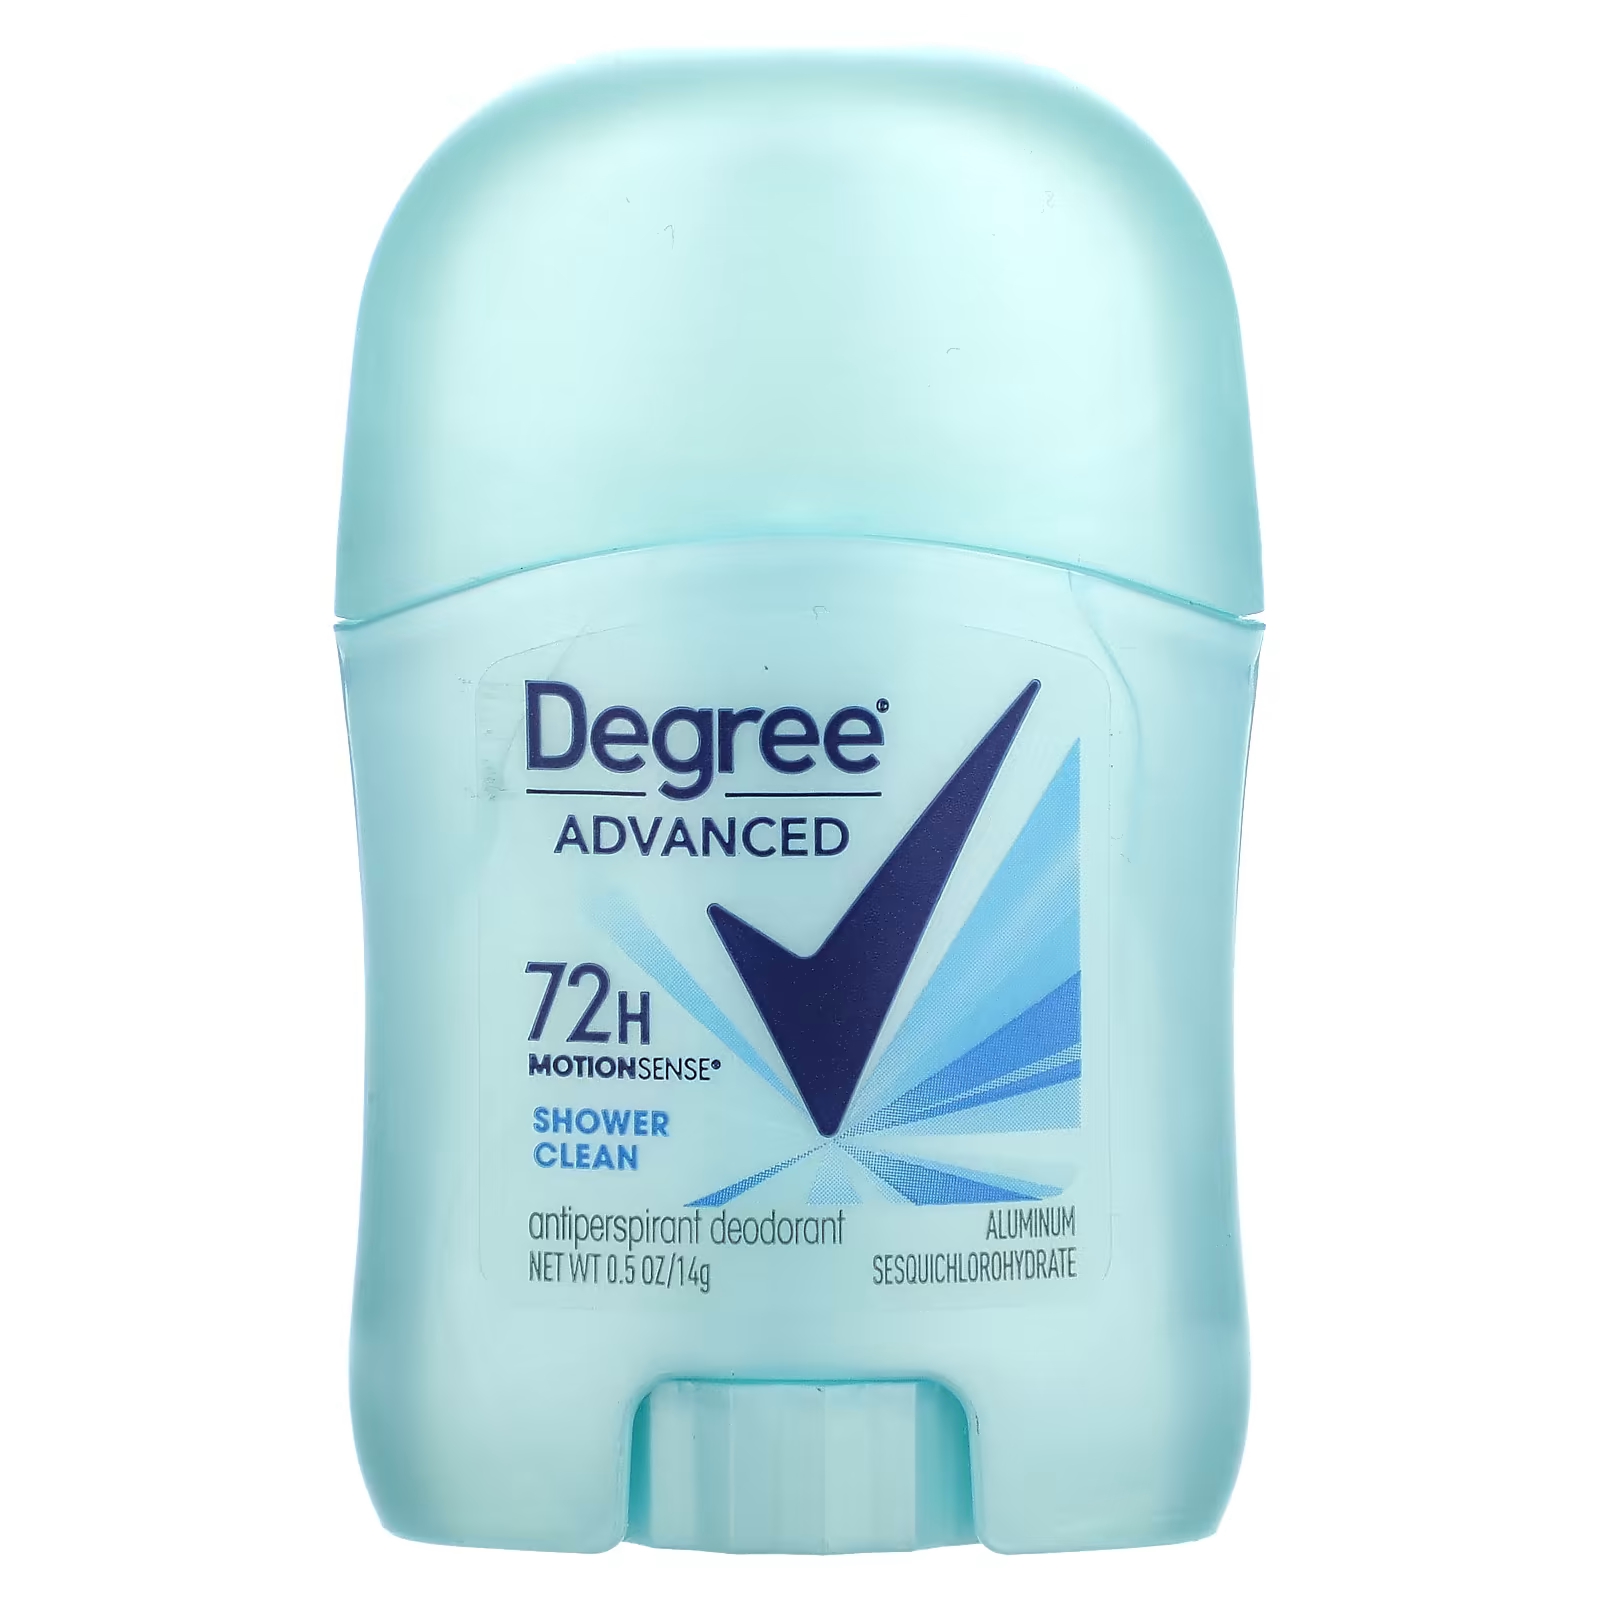 Дезодорант Degree Advanced MotionSense 72 часа, 14 г дезодорант антиперспирант degree deodorant clean для душа